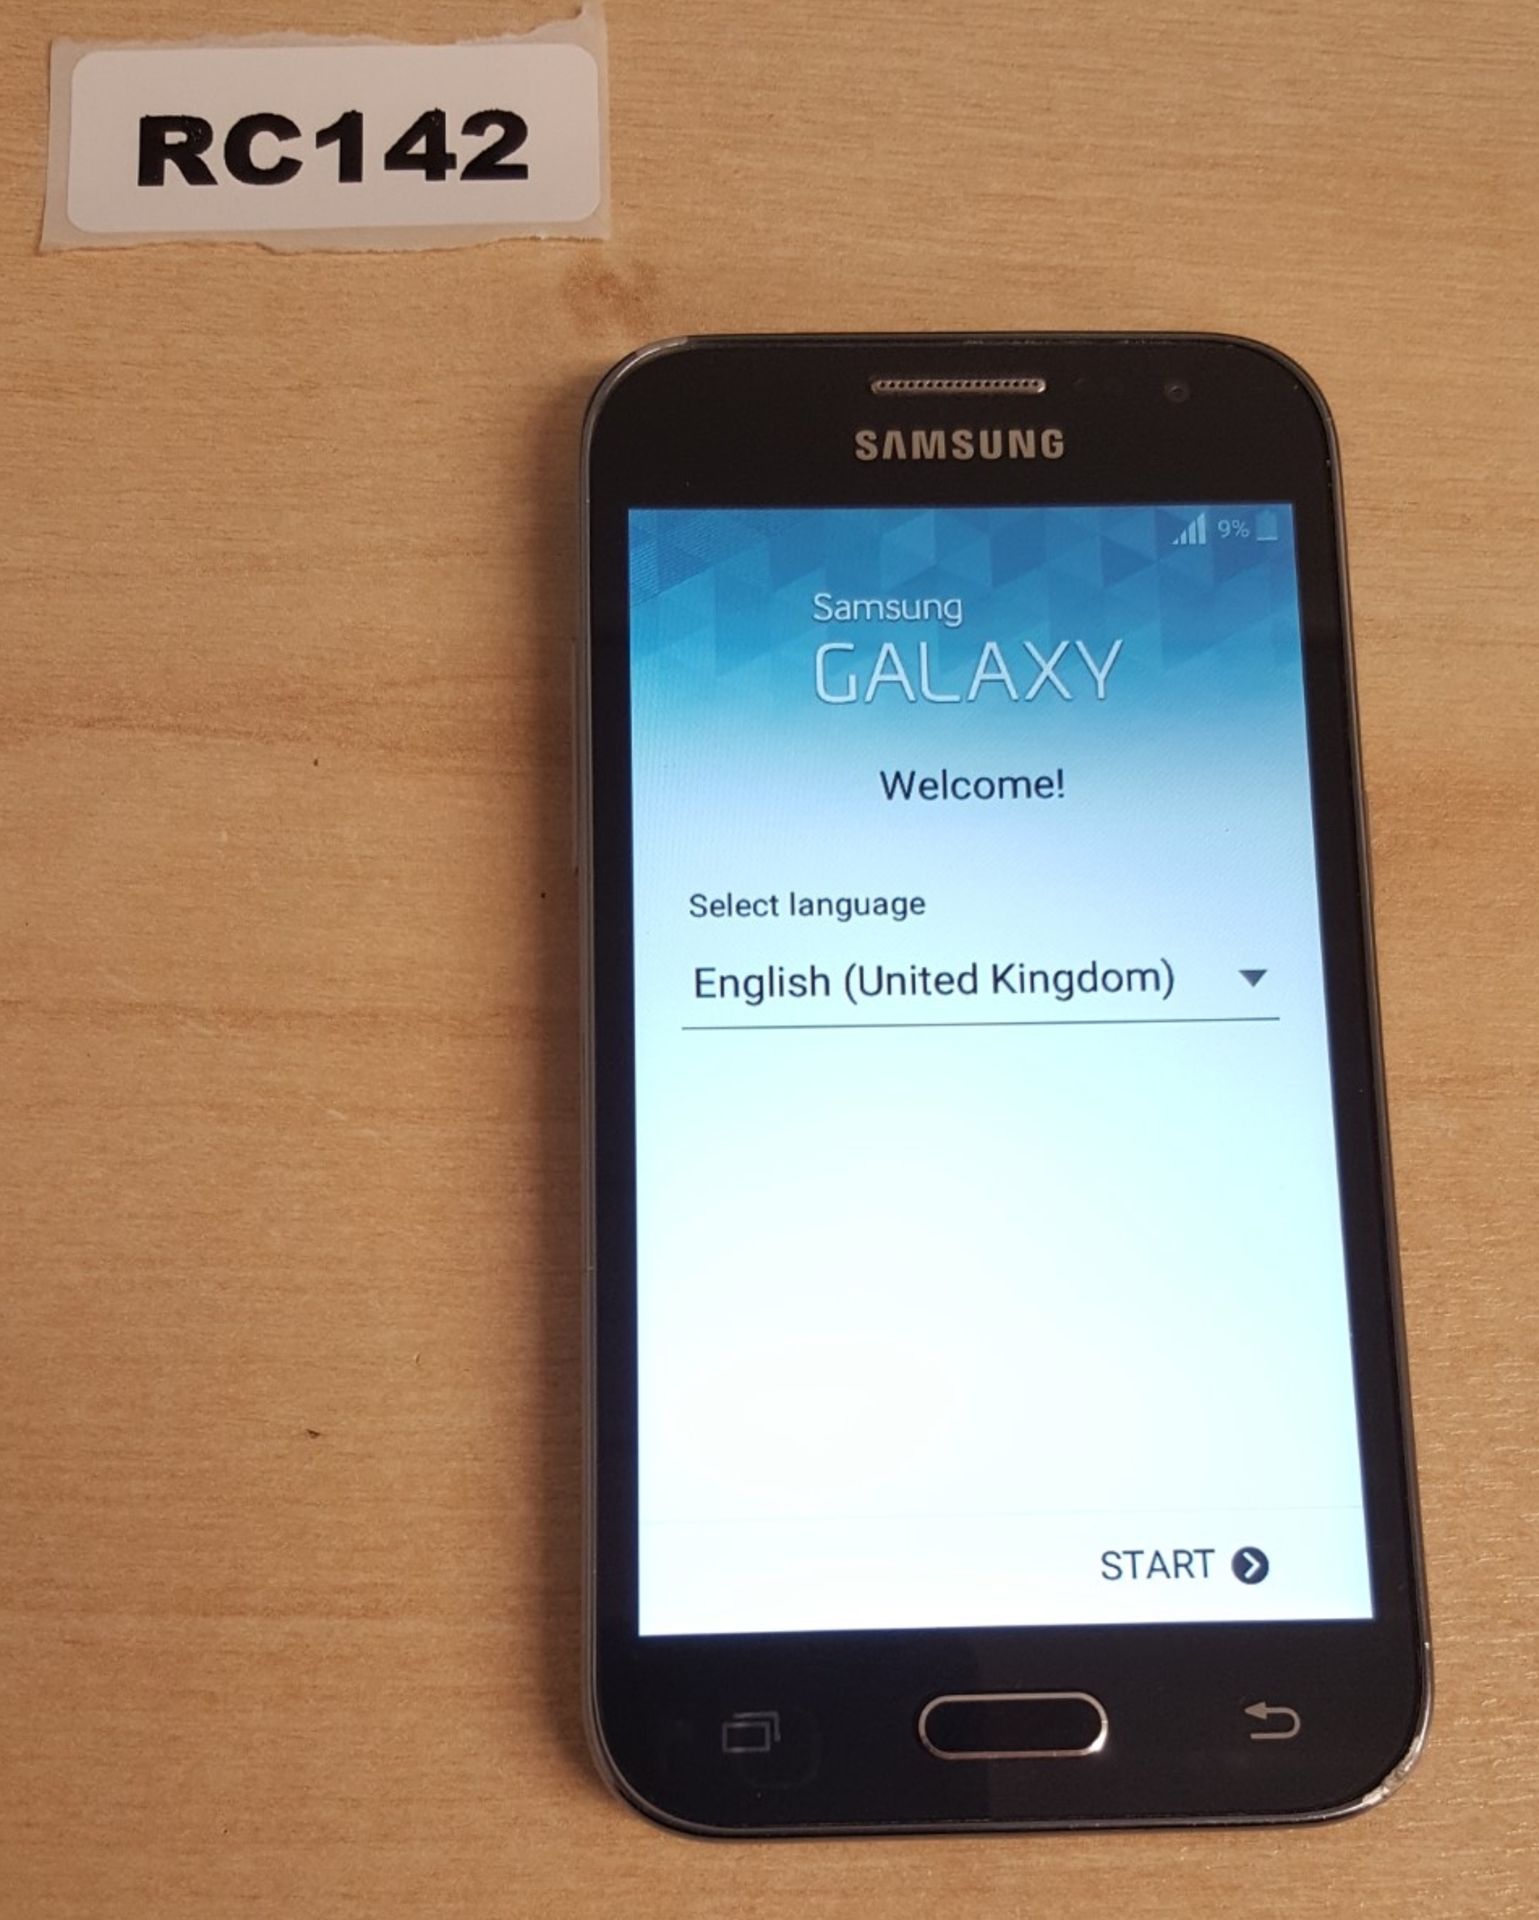 1 x Samsung Galaxy Core Prime Black Smartphone - Ref RC142